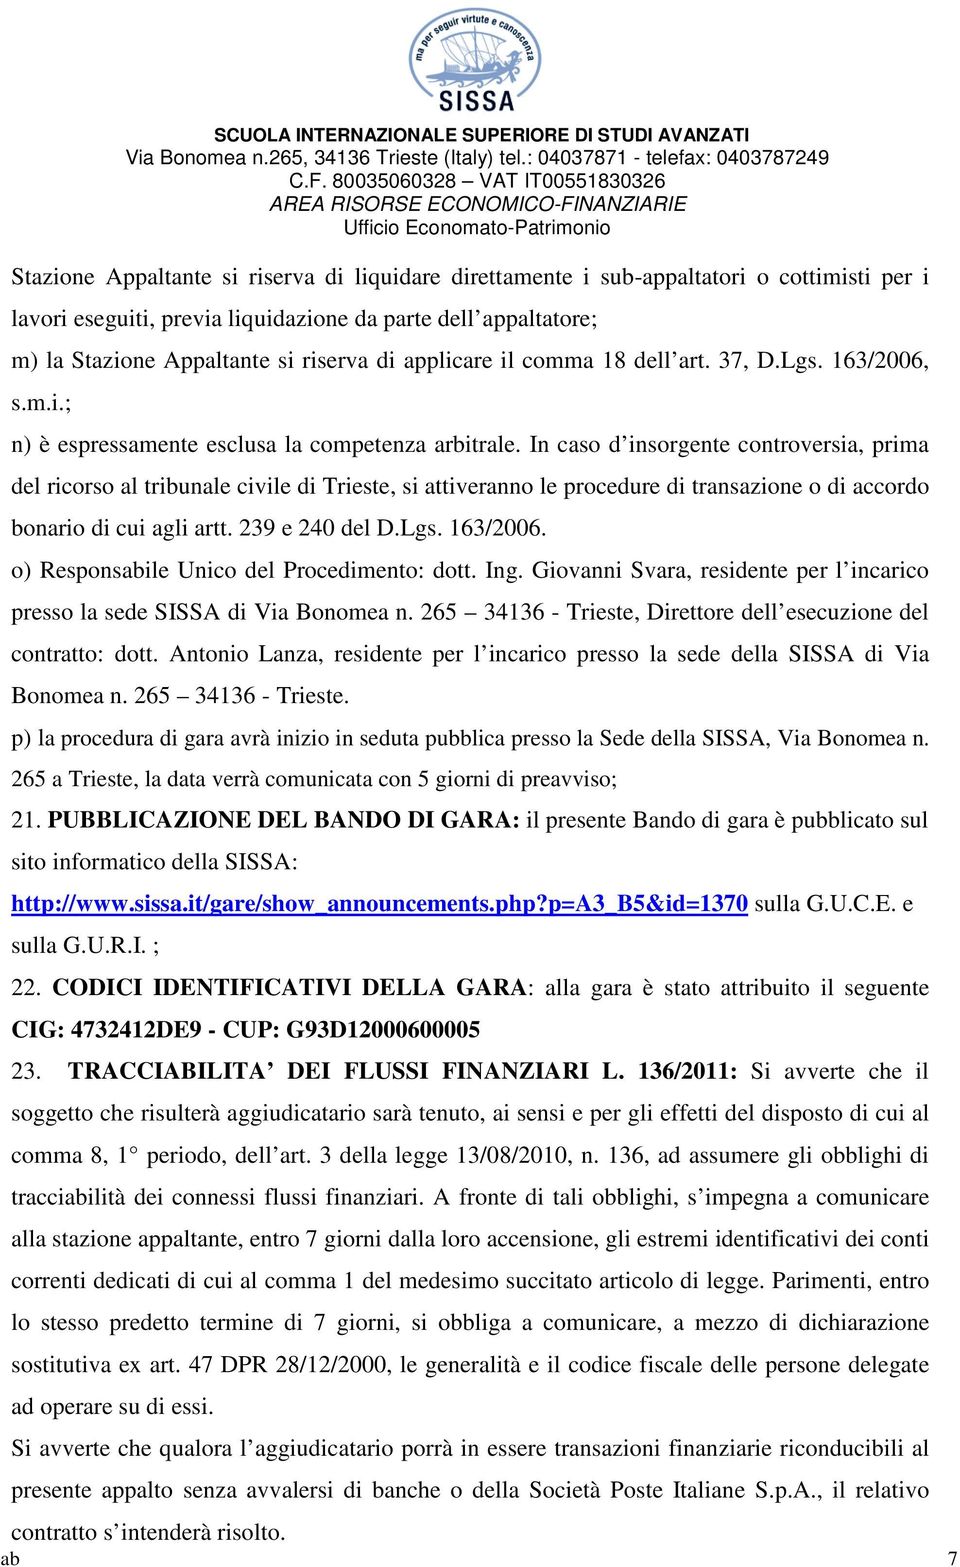 In caso d insorgente controversia, prima del ricorso al tribunale civile di Trieste, si attiveranno le procedure di transazione o di accordo bonario di cui agli artt. 239 e 240 del D.Lgs. 163/2006.